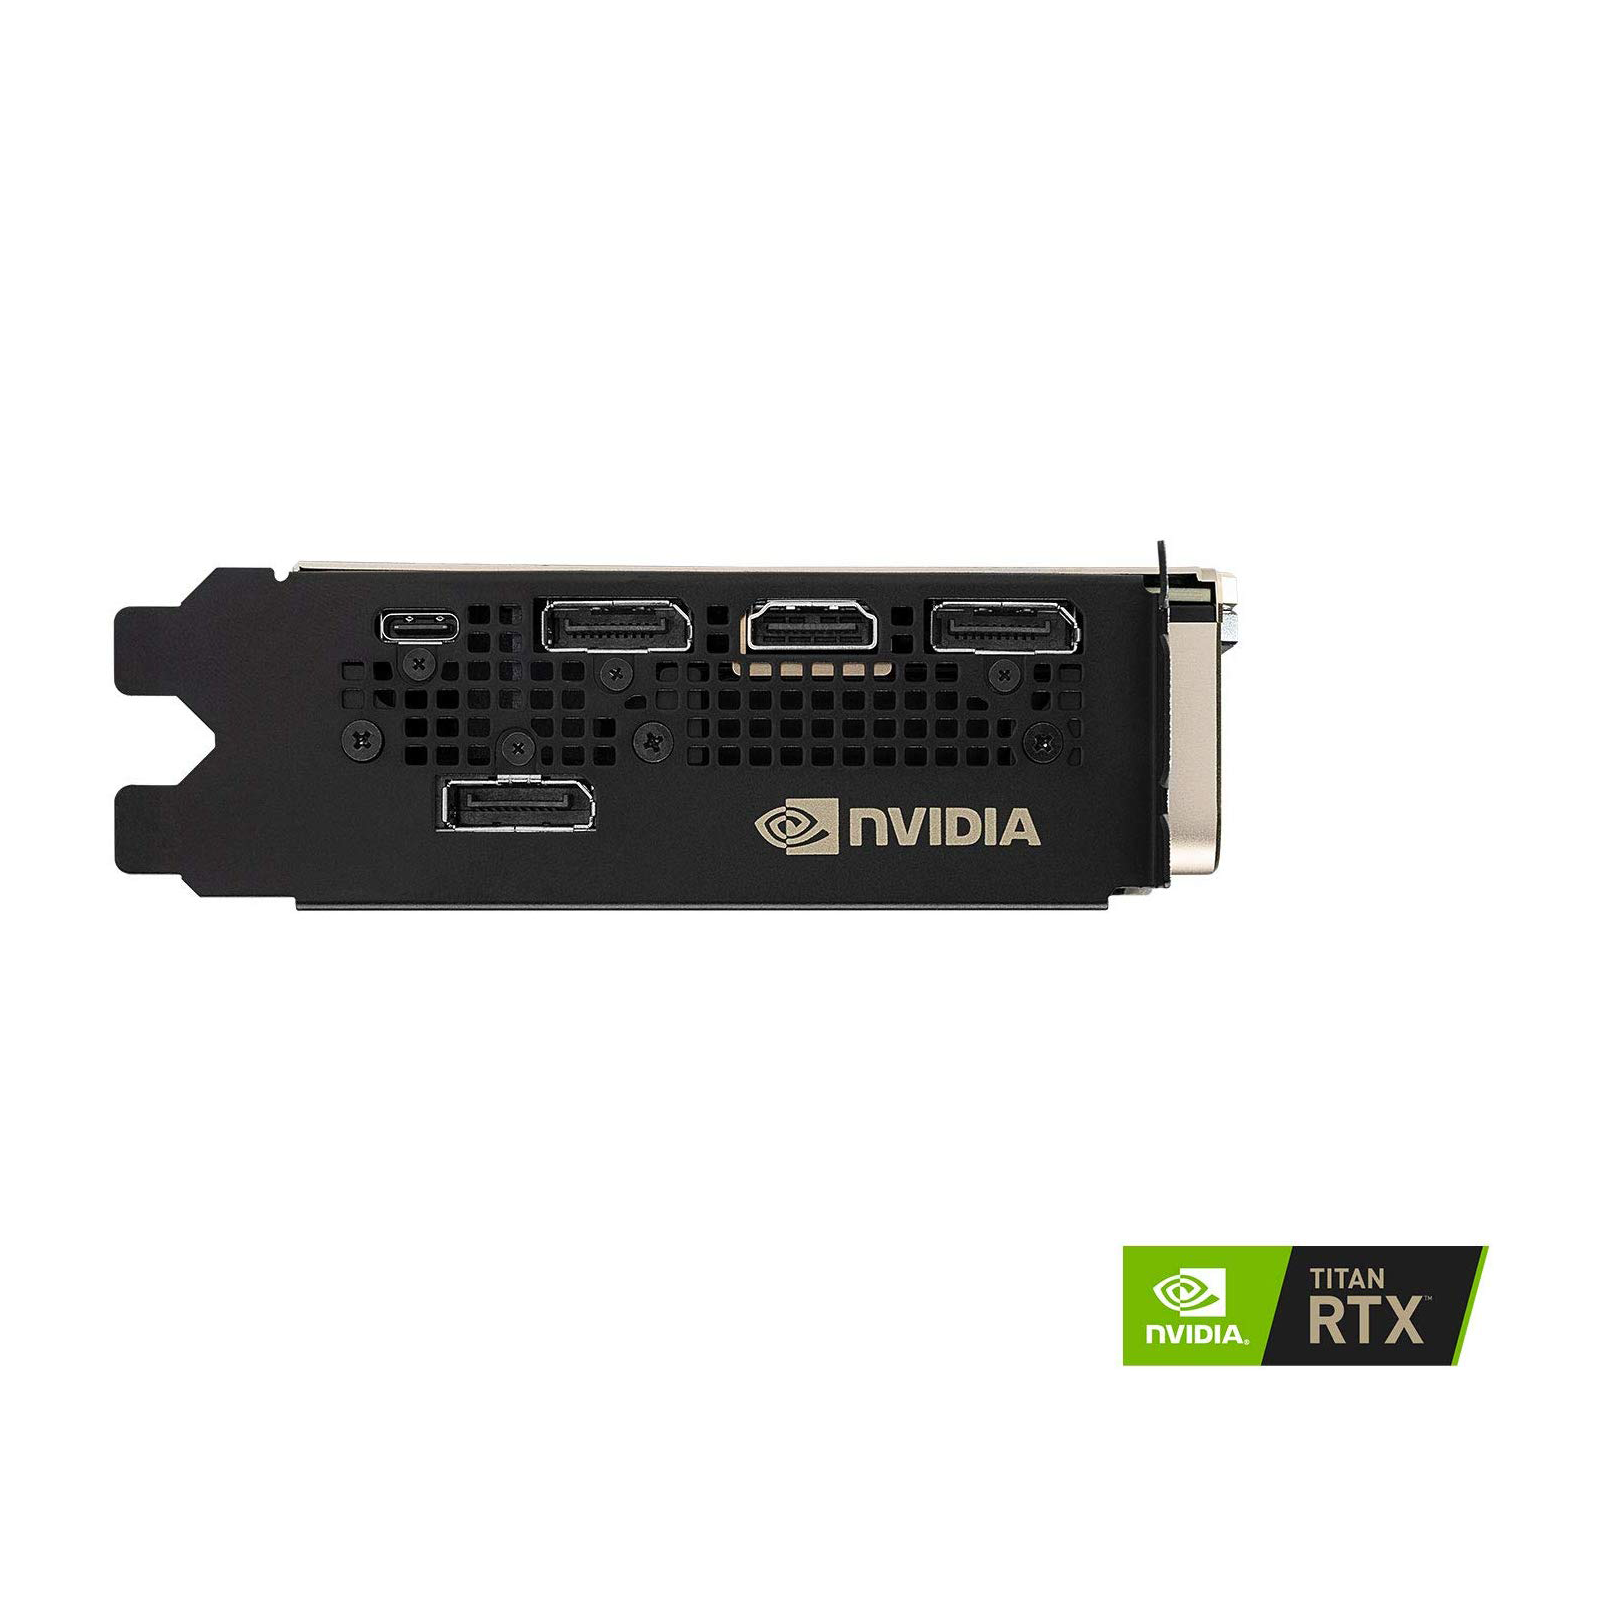 NVIDIA TITAN RTX | Best GPU 2019